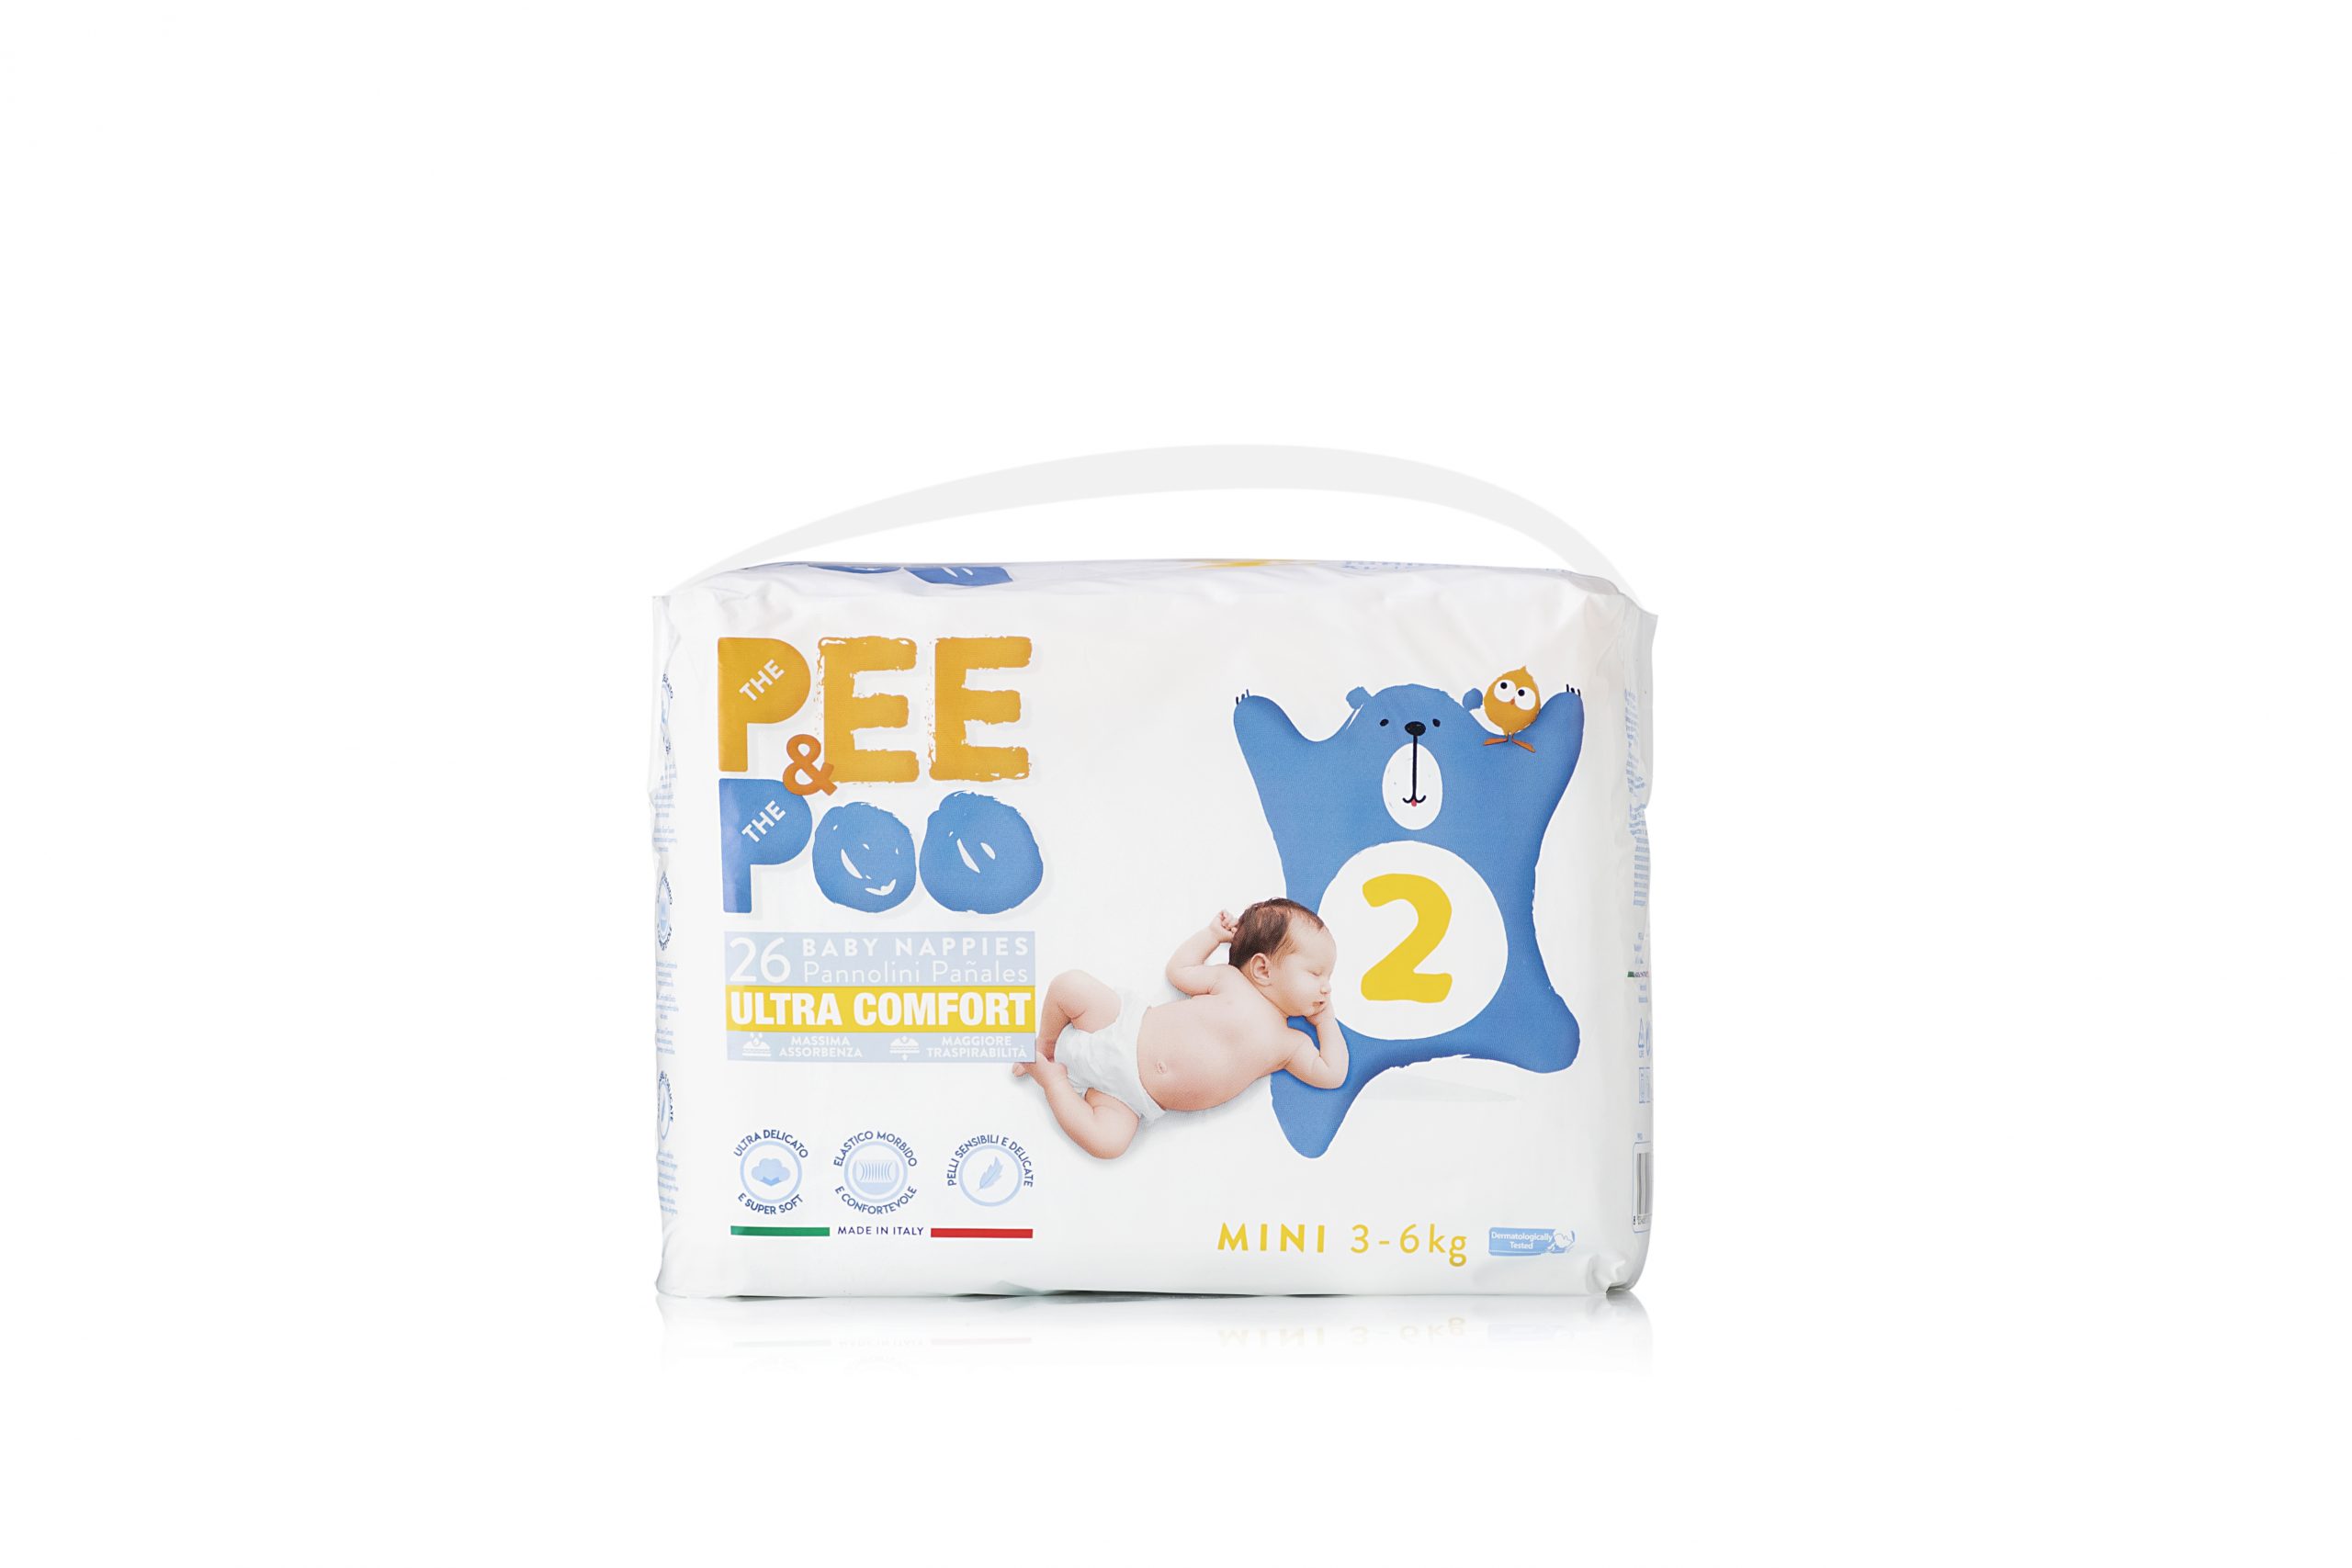 Pee&poo mini taglia 2 - 26 pz - 